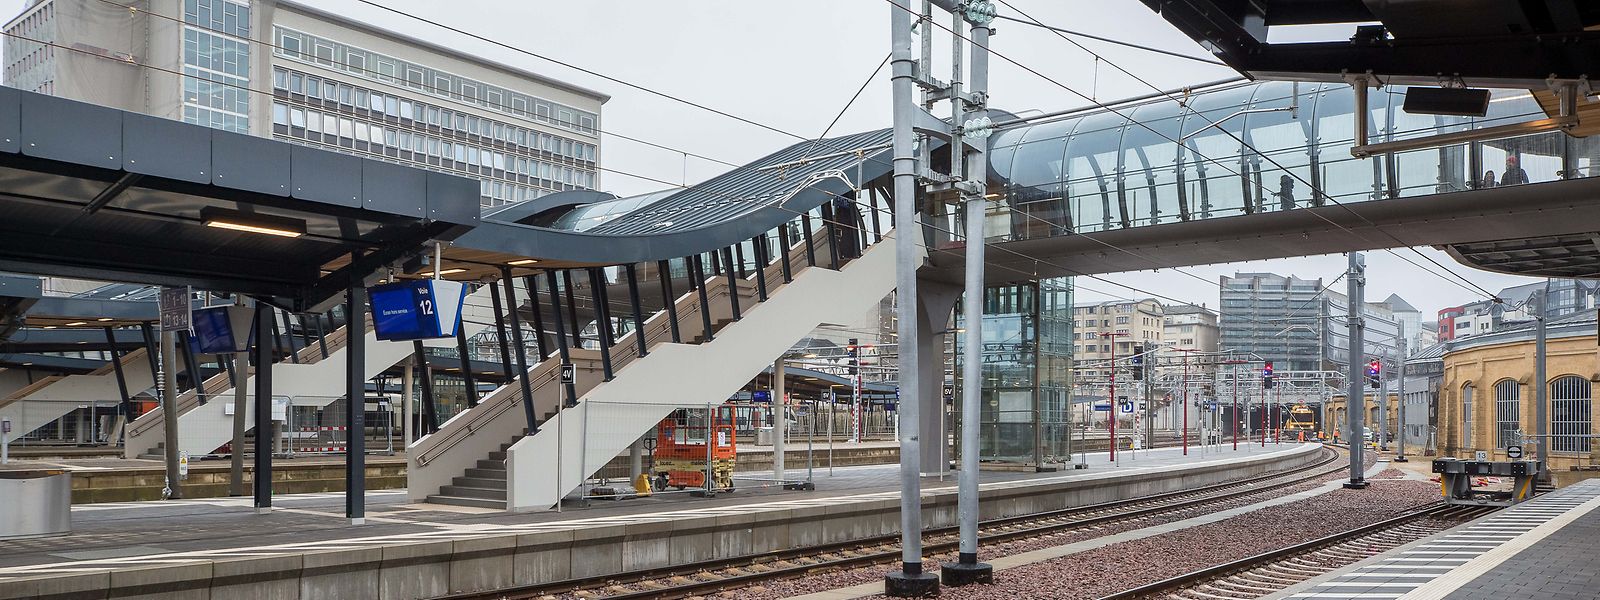 Der Ausbau und die Modernisierung des Bahnhofs Luxemburg-Stadt kostete 171 Millionen Euro.